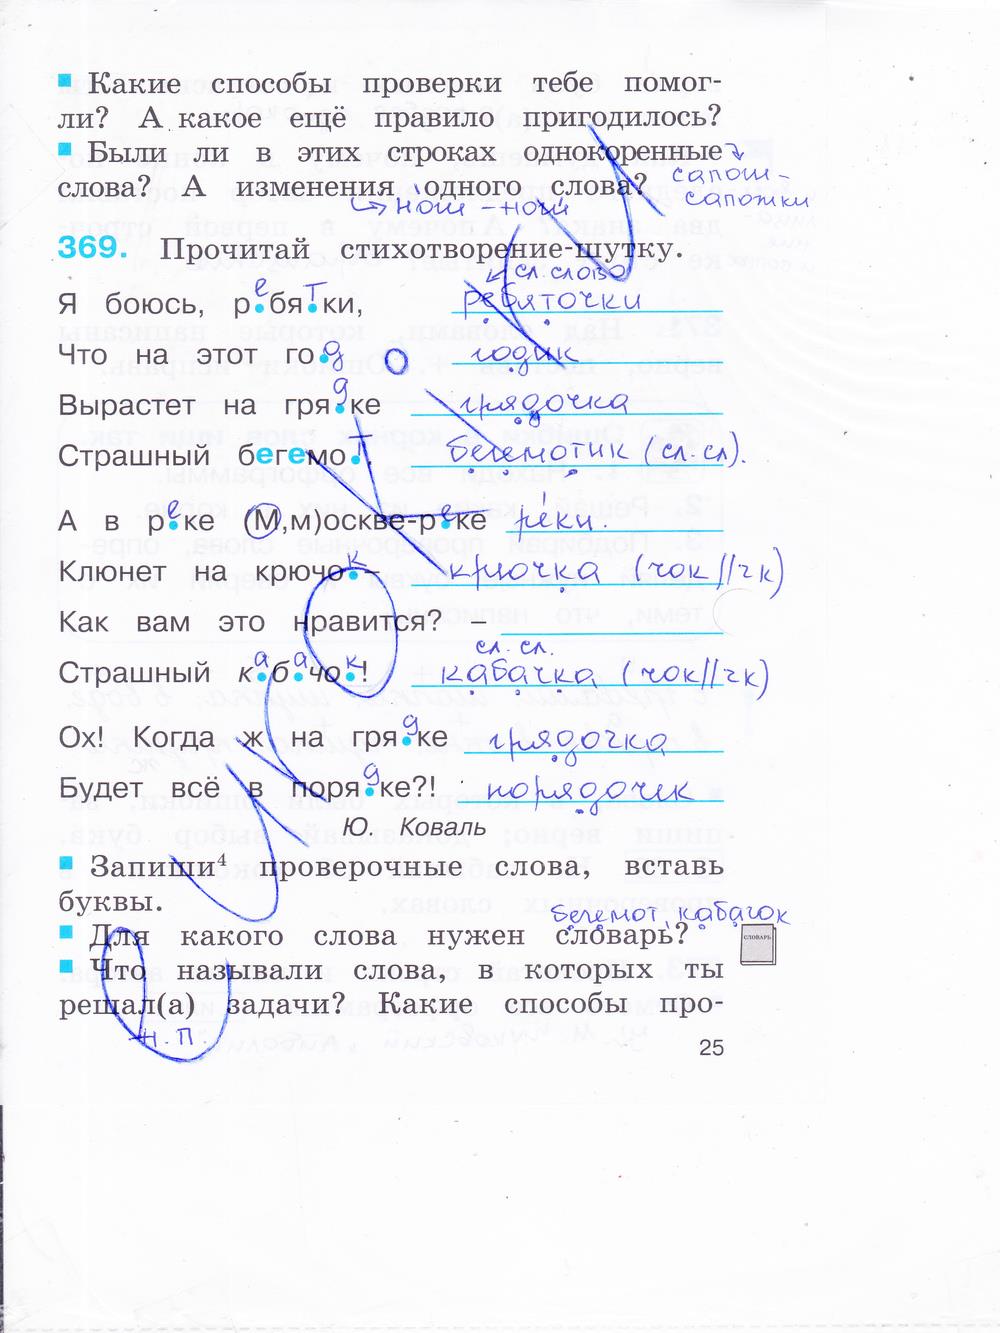 гдз 2 класс рабочая тетрадь часть 2 страница 25 русский язык Соловейчик, Кузьменко